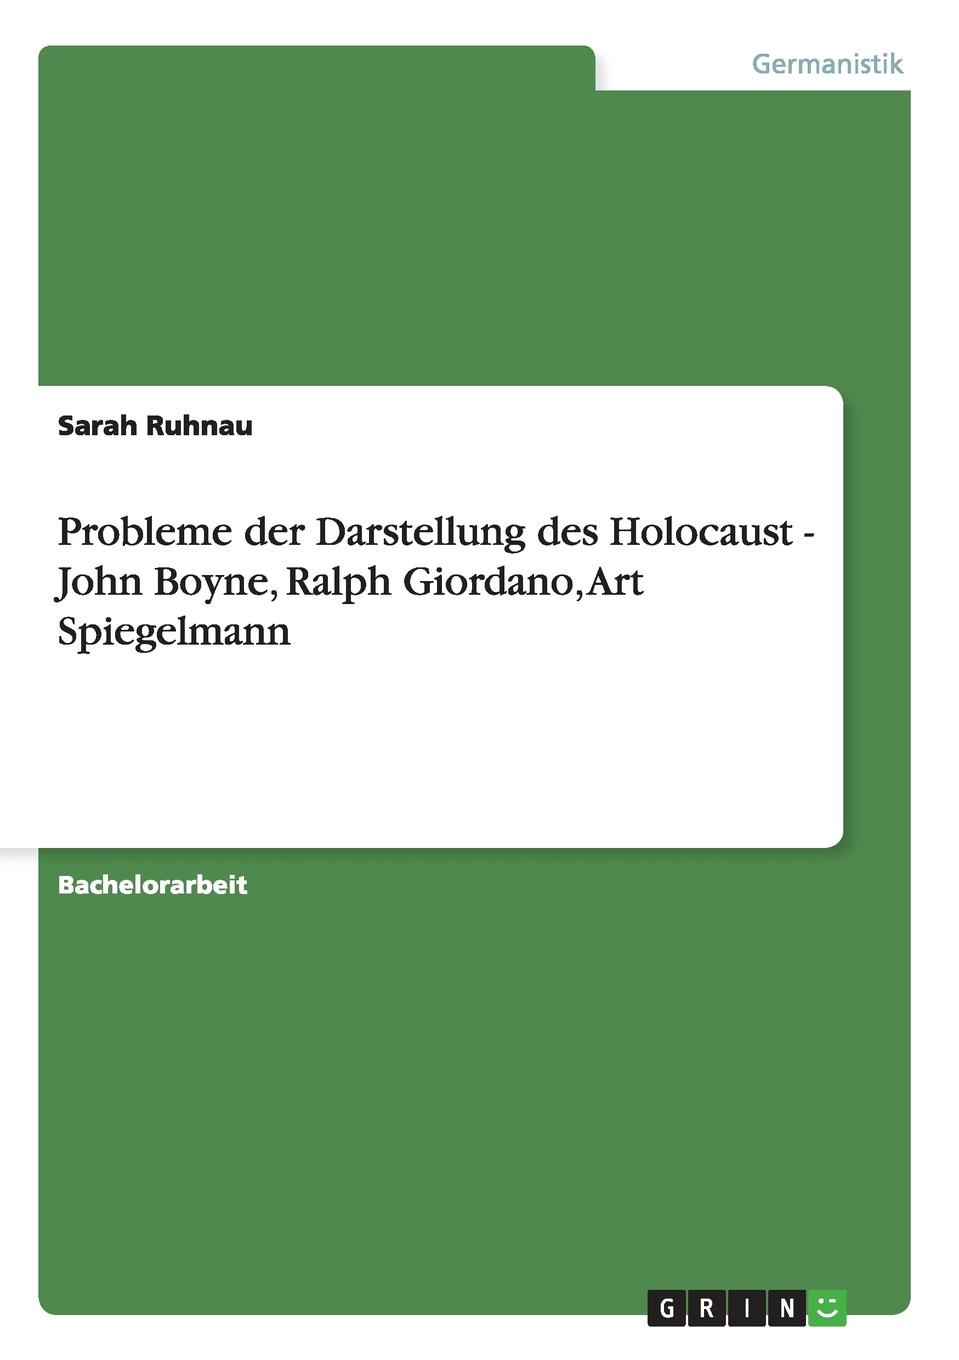 Sarah Ruhnau Probleme der Darstellung des Holocaust - John Boyne, Ralph Giordano, Art Spiegelmann